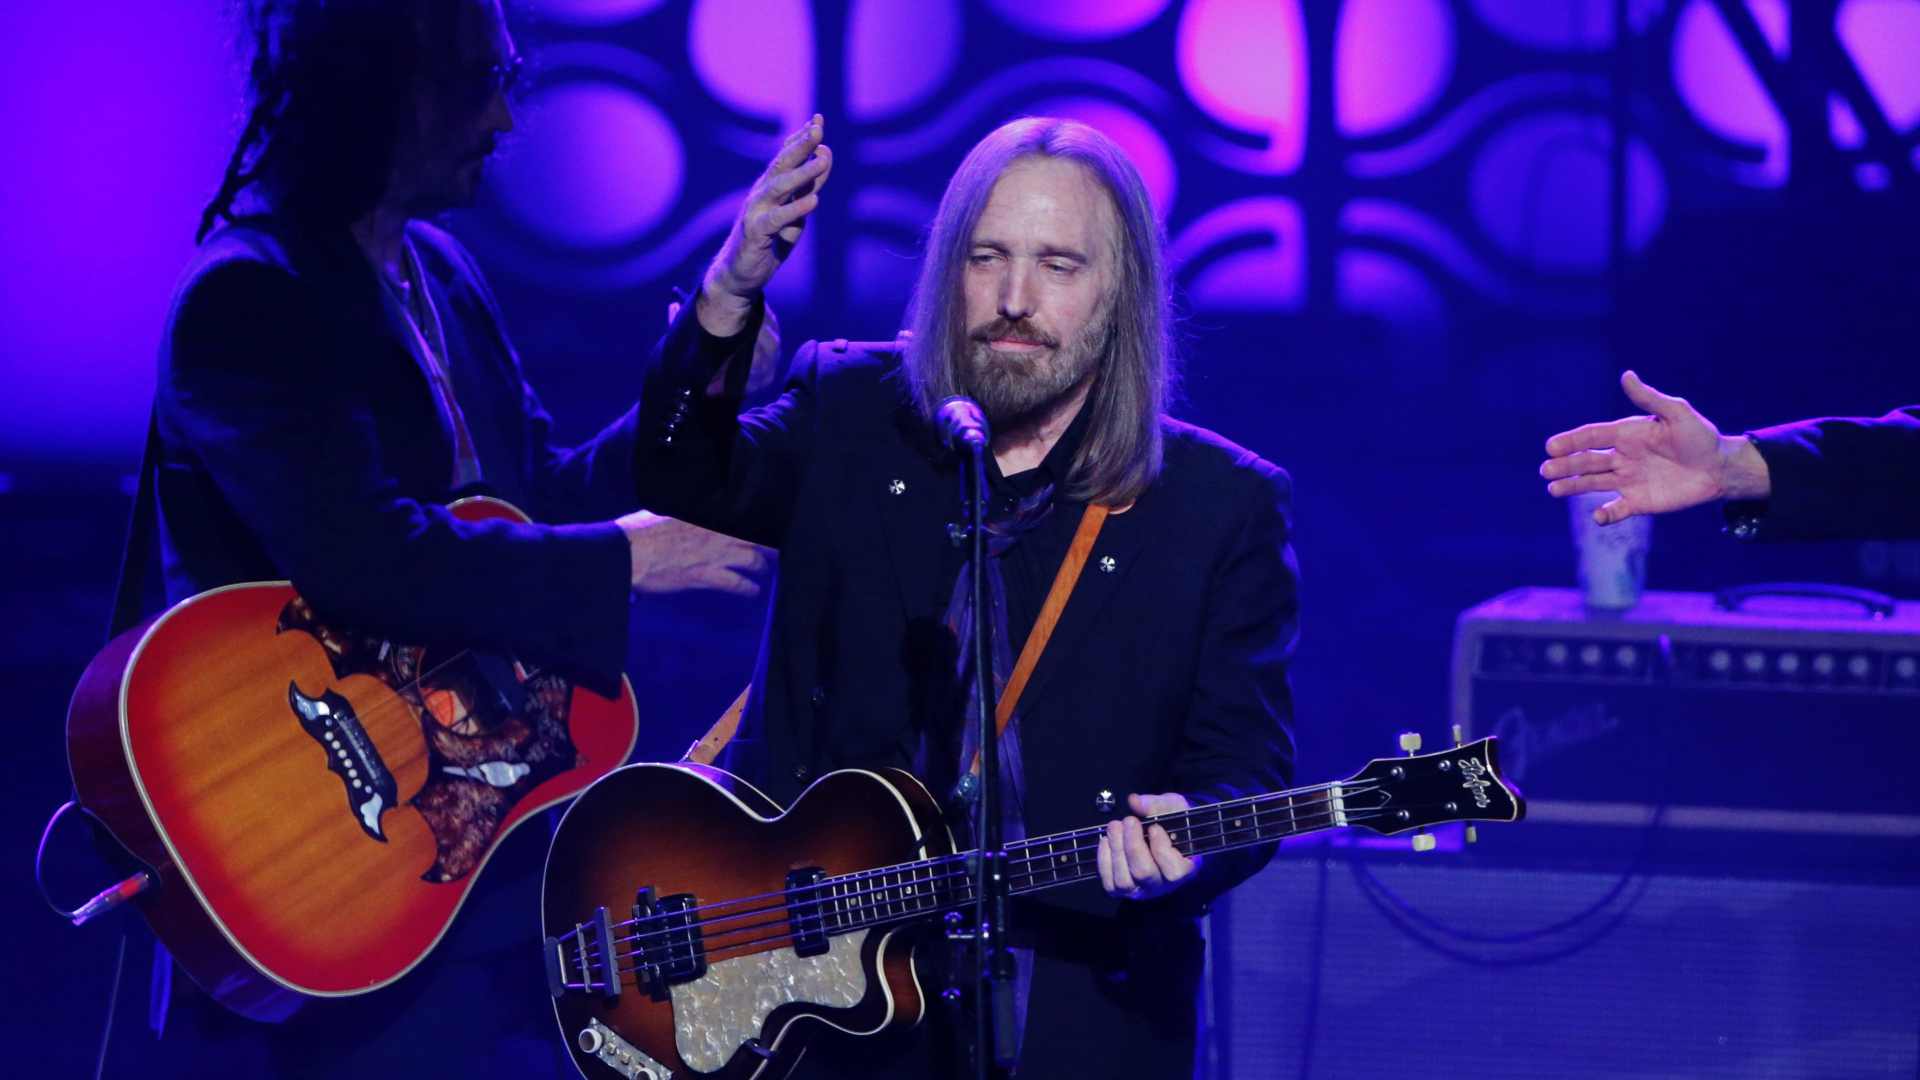 La familia de Tom Petty publica que el roquero murió por una sobredosis "accidental" de medicamentos